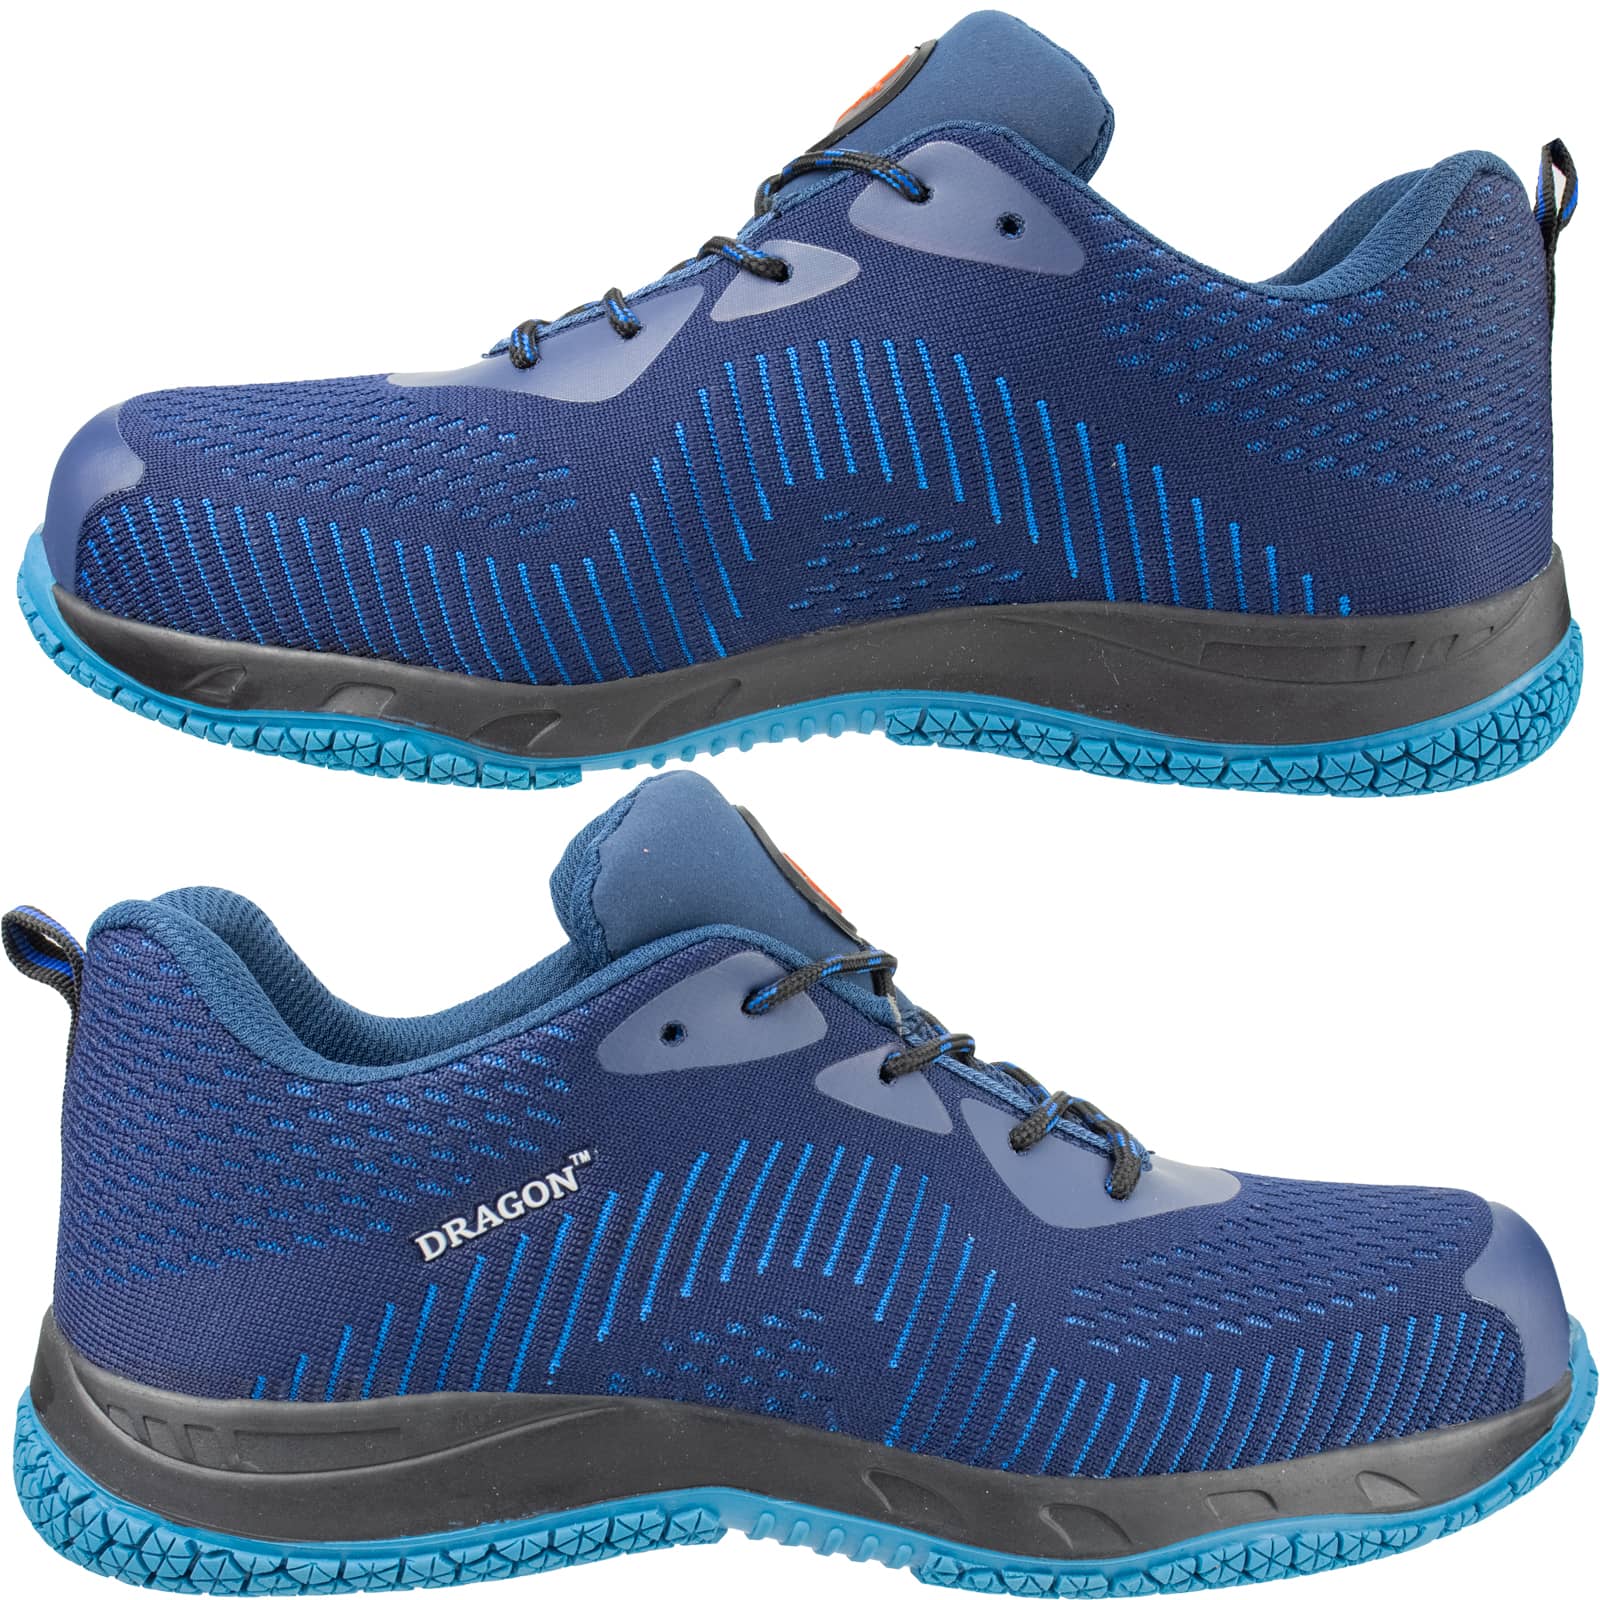 Tenisková bezpečnostná obuv DRAGON® CAMP S1P blue